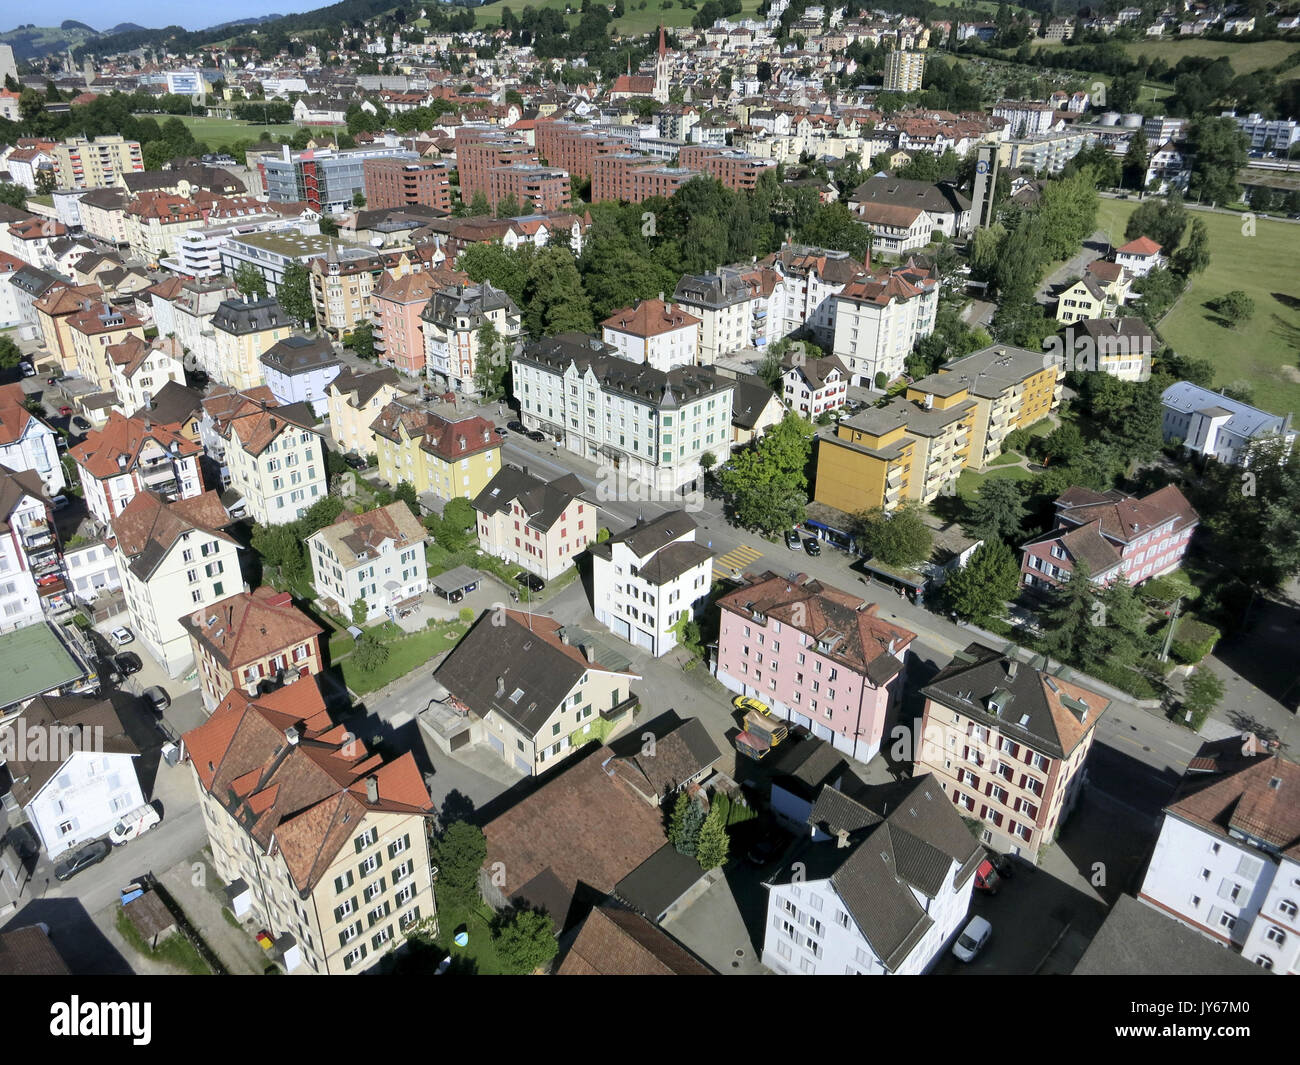 Lachen St. Gallen *** Local Caption *** Saint Gall, St. Gallen, Sankt Gallen, Residential, Center, City, Switzerland, Aerial View, aerial photography, Stock Photo